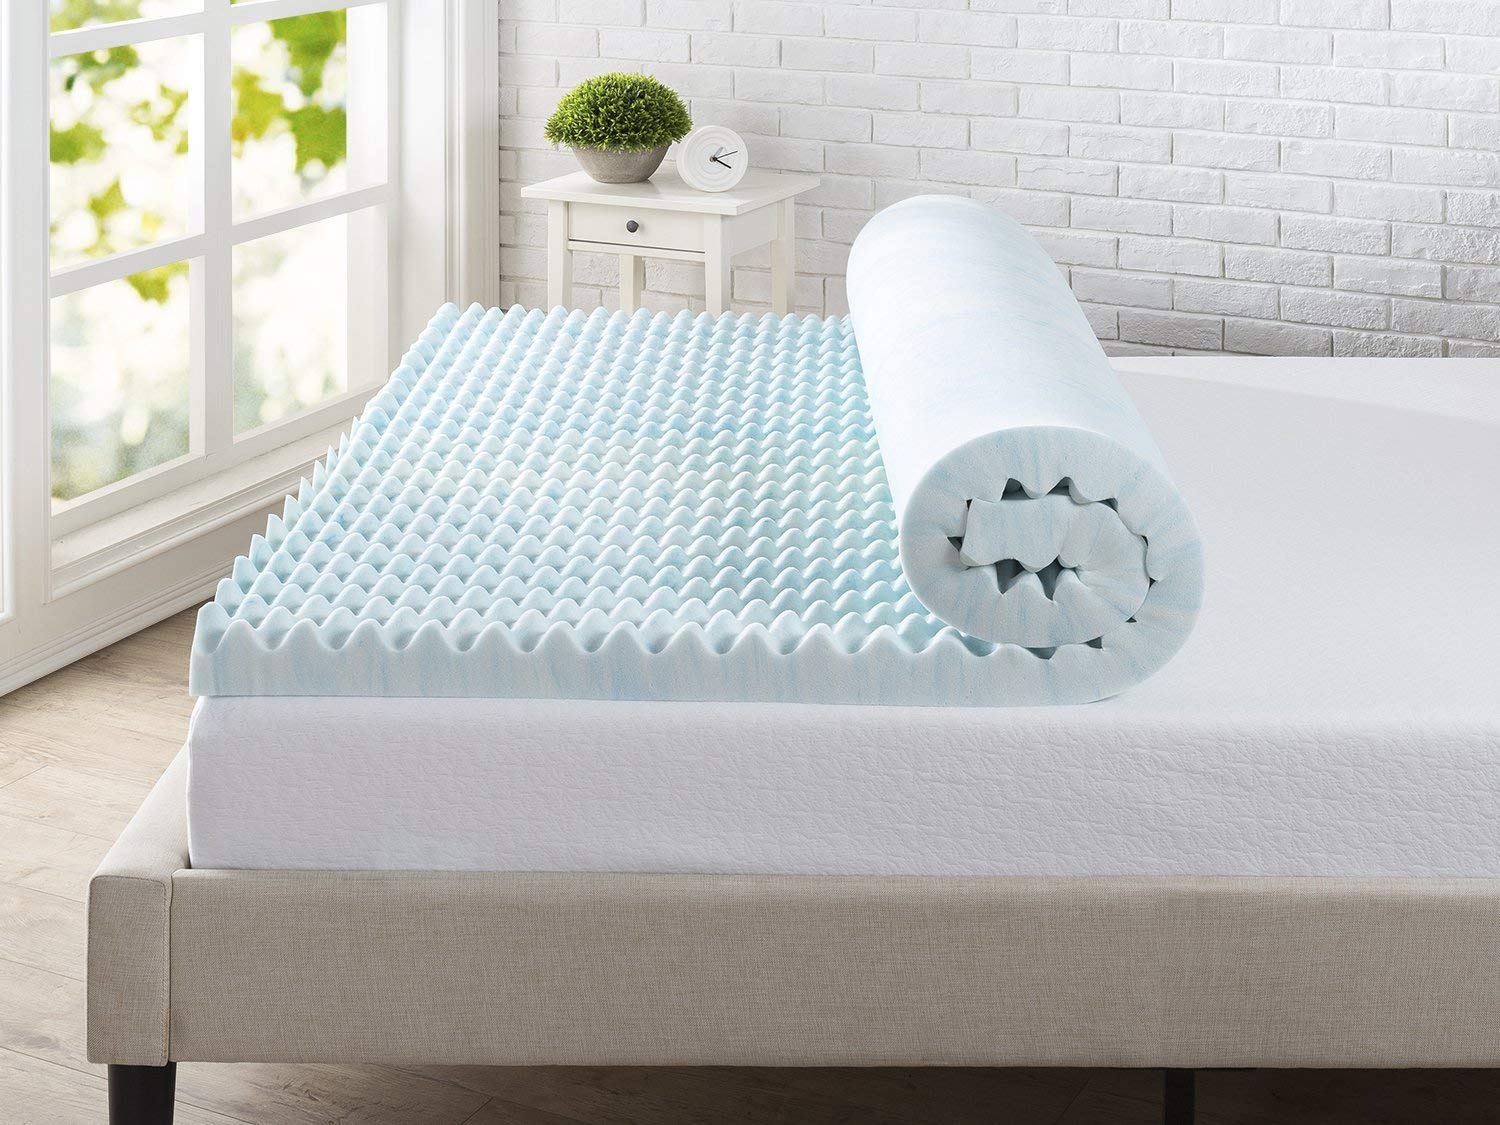 mattress topper to soften a firm mattress